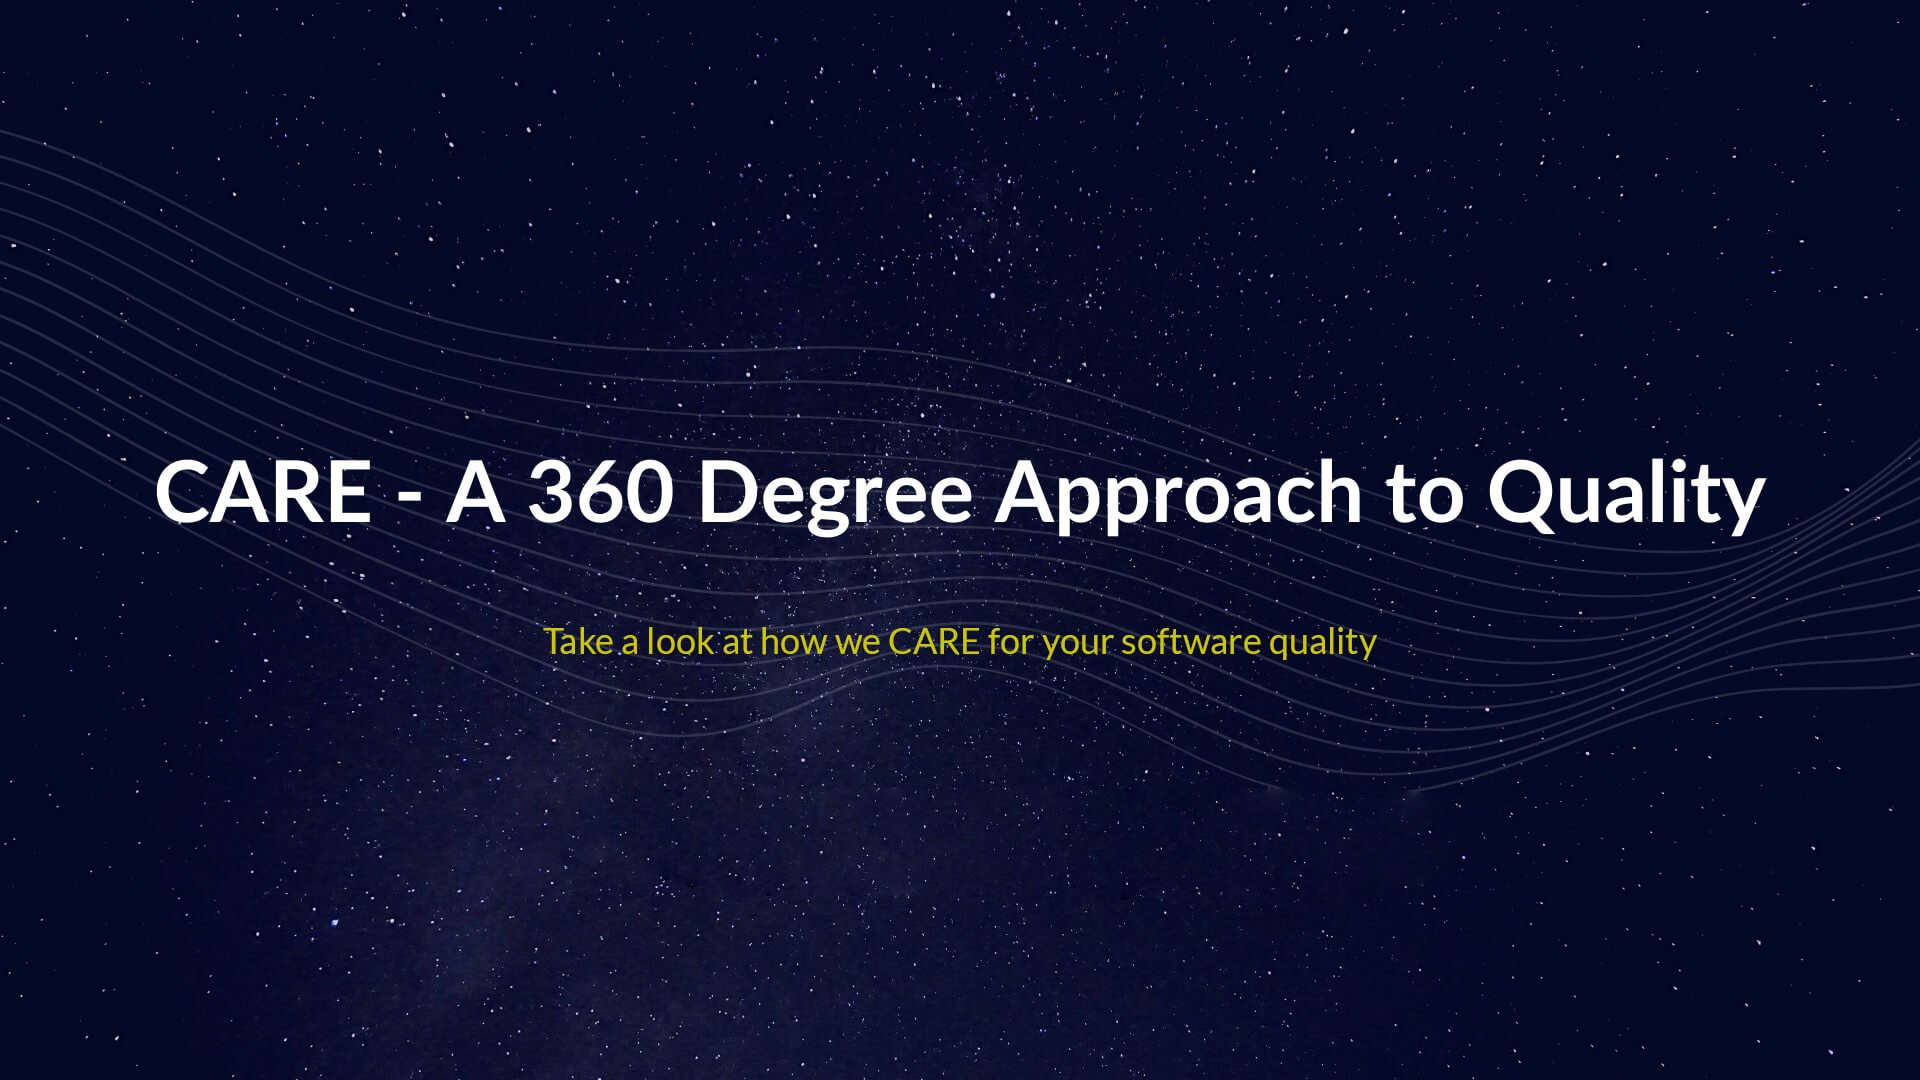 CARE(Check, Act, Refine, Evolve) – Une approche à 360 degrés de la qualité